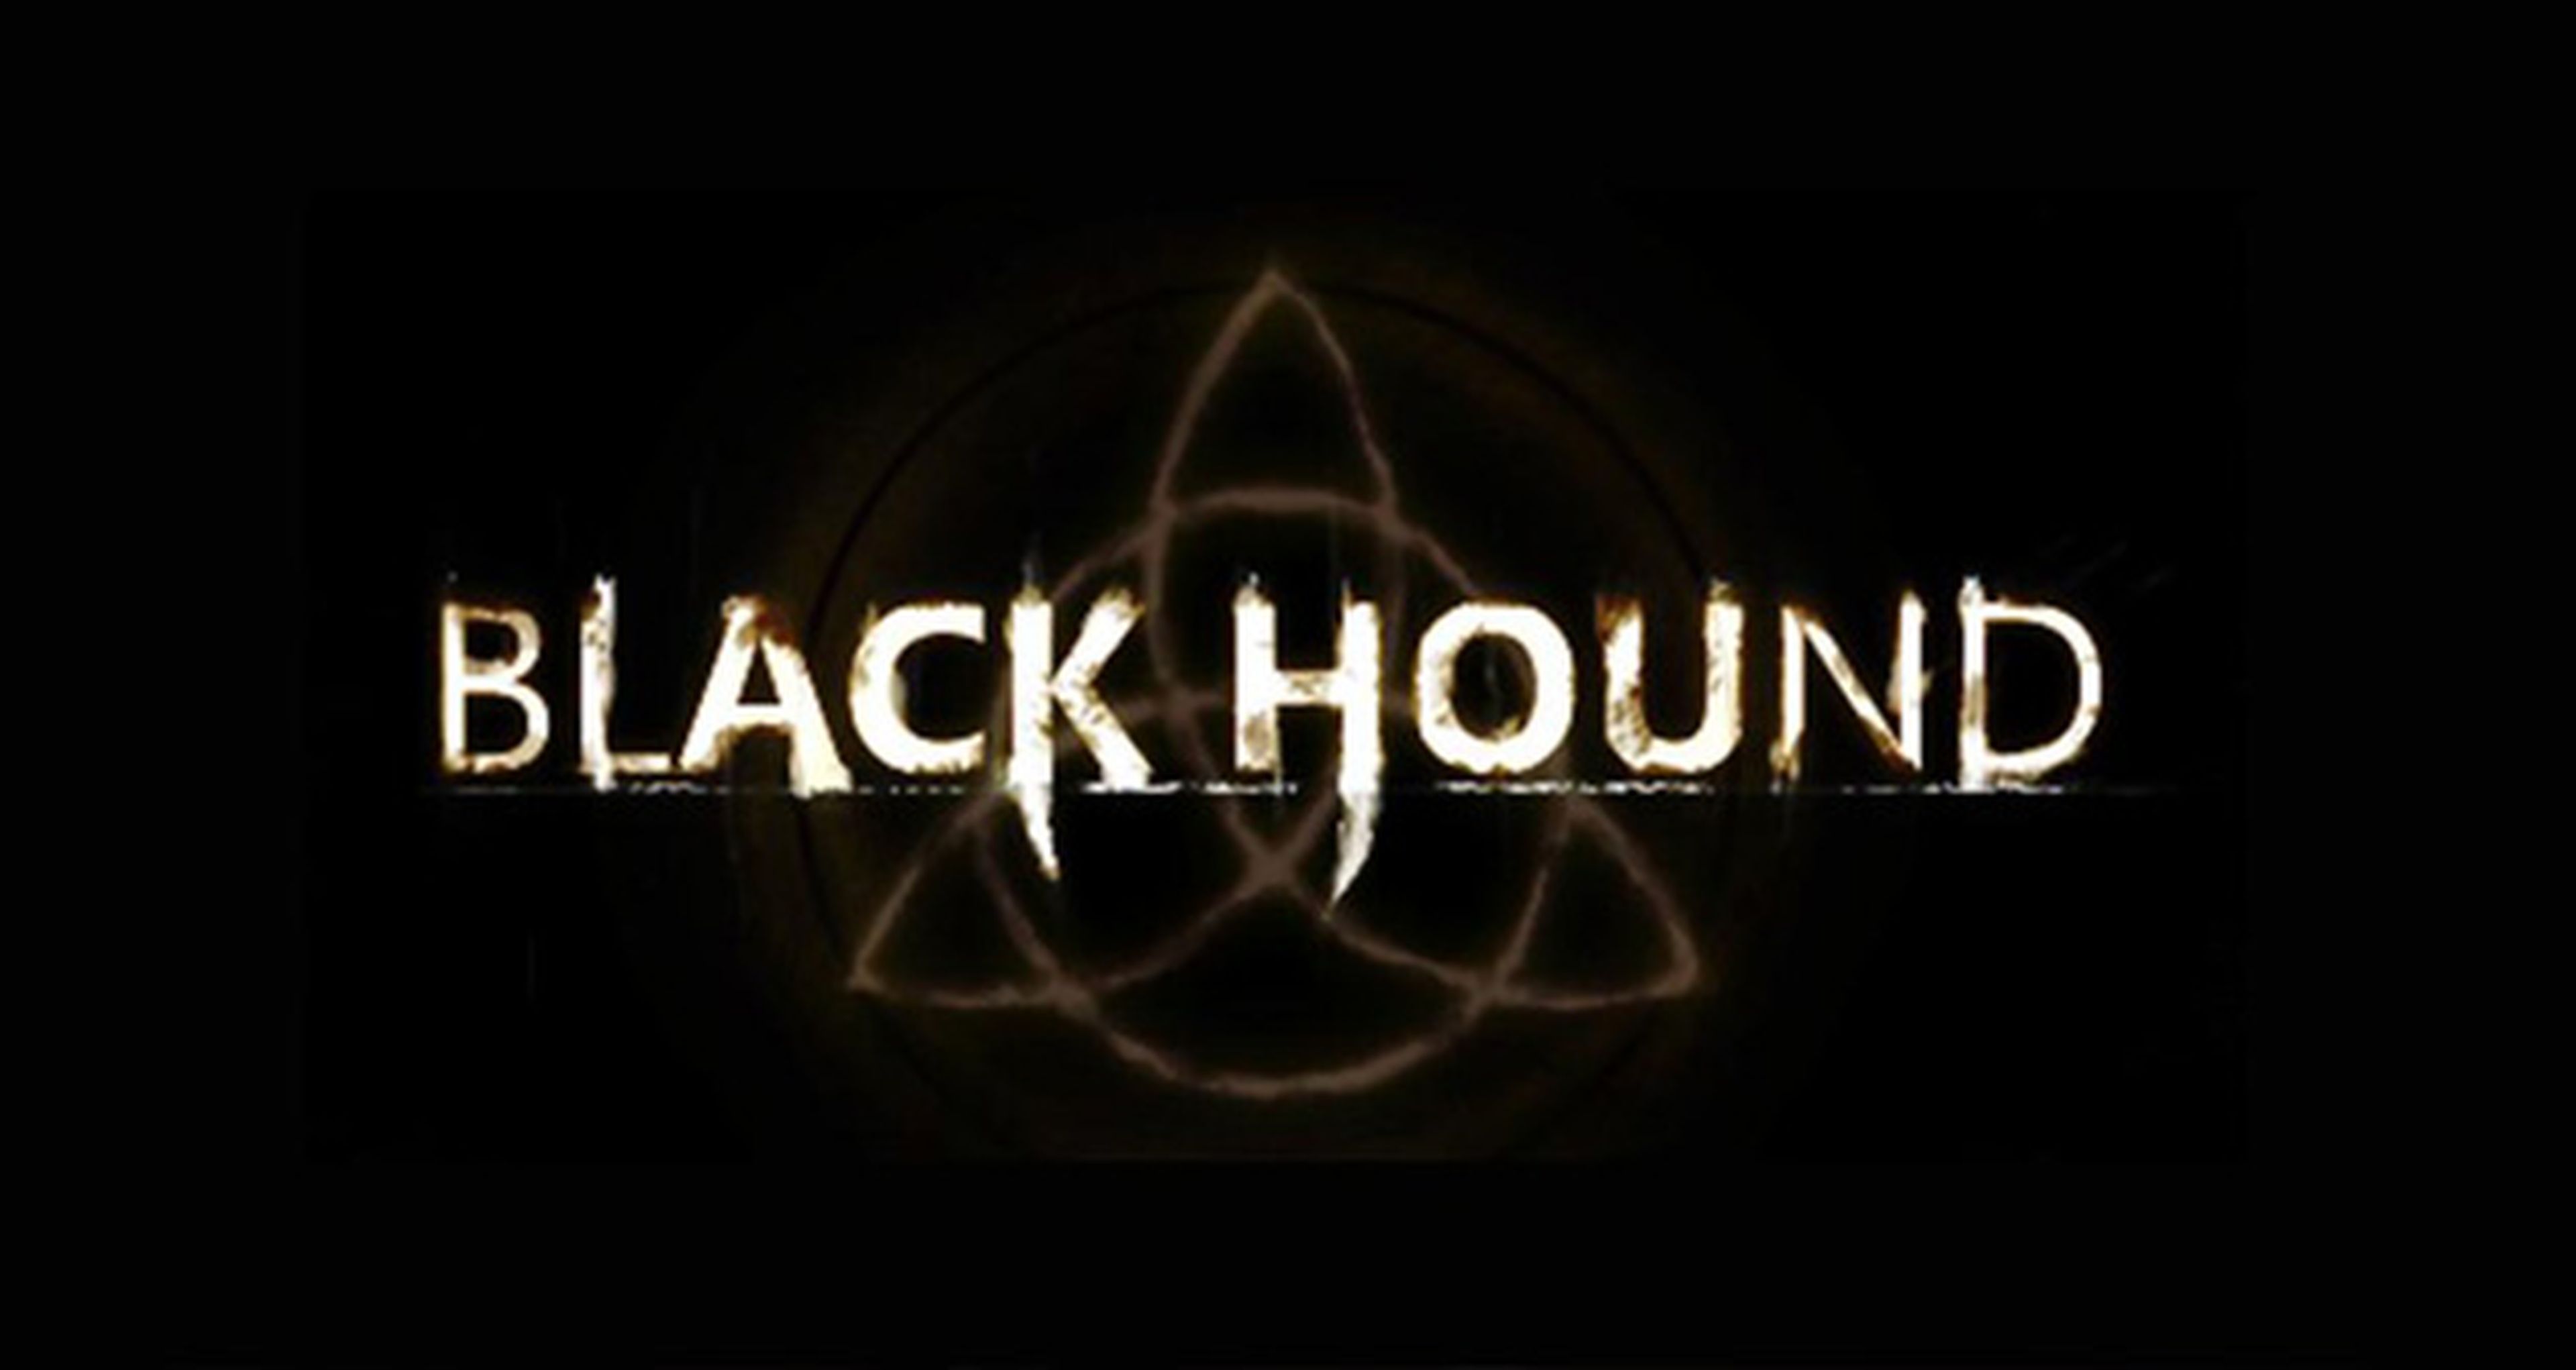 Black Hound no será el próximo juego de Hideo Kojima